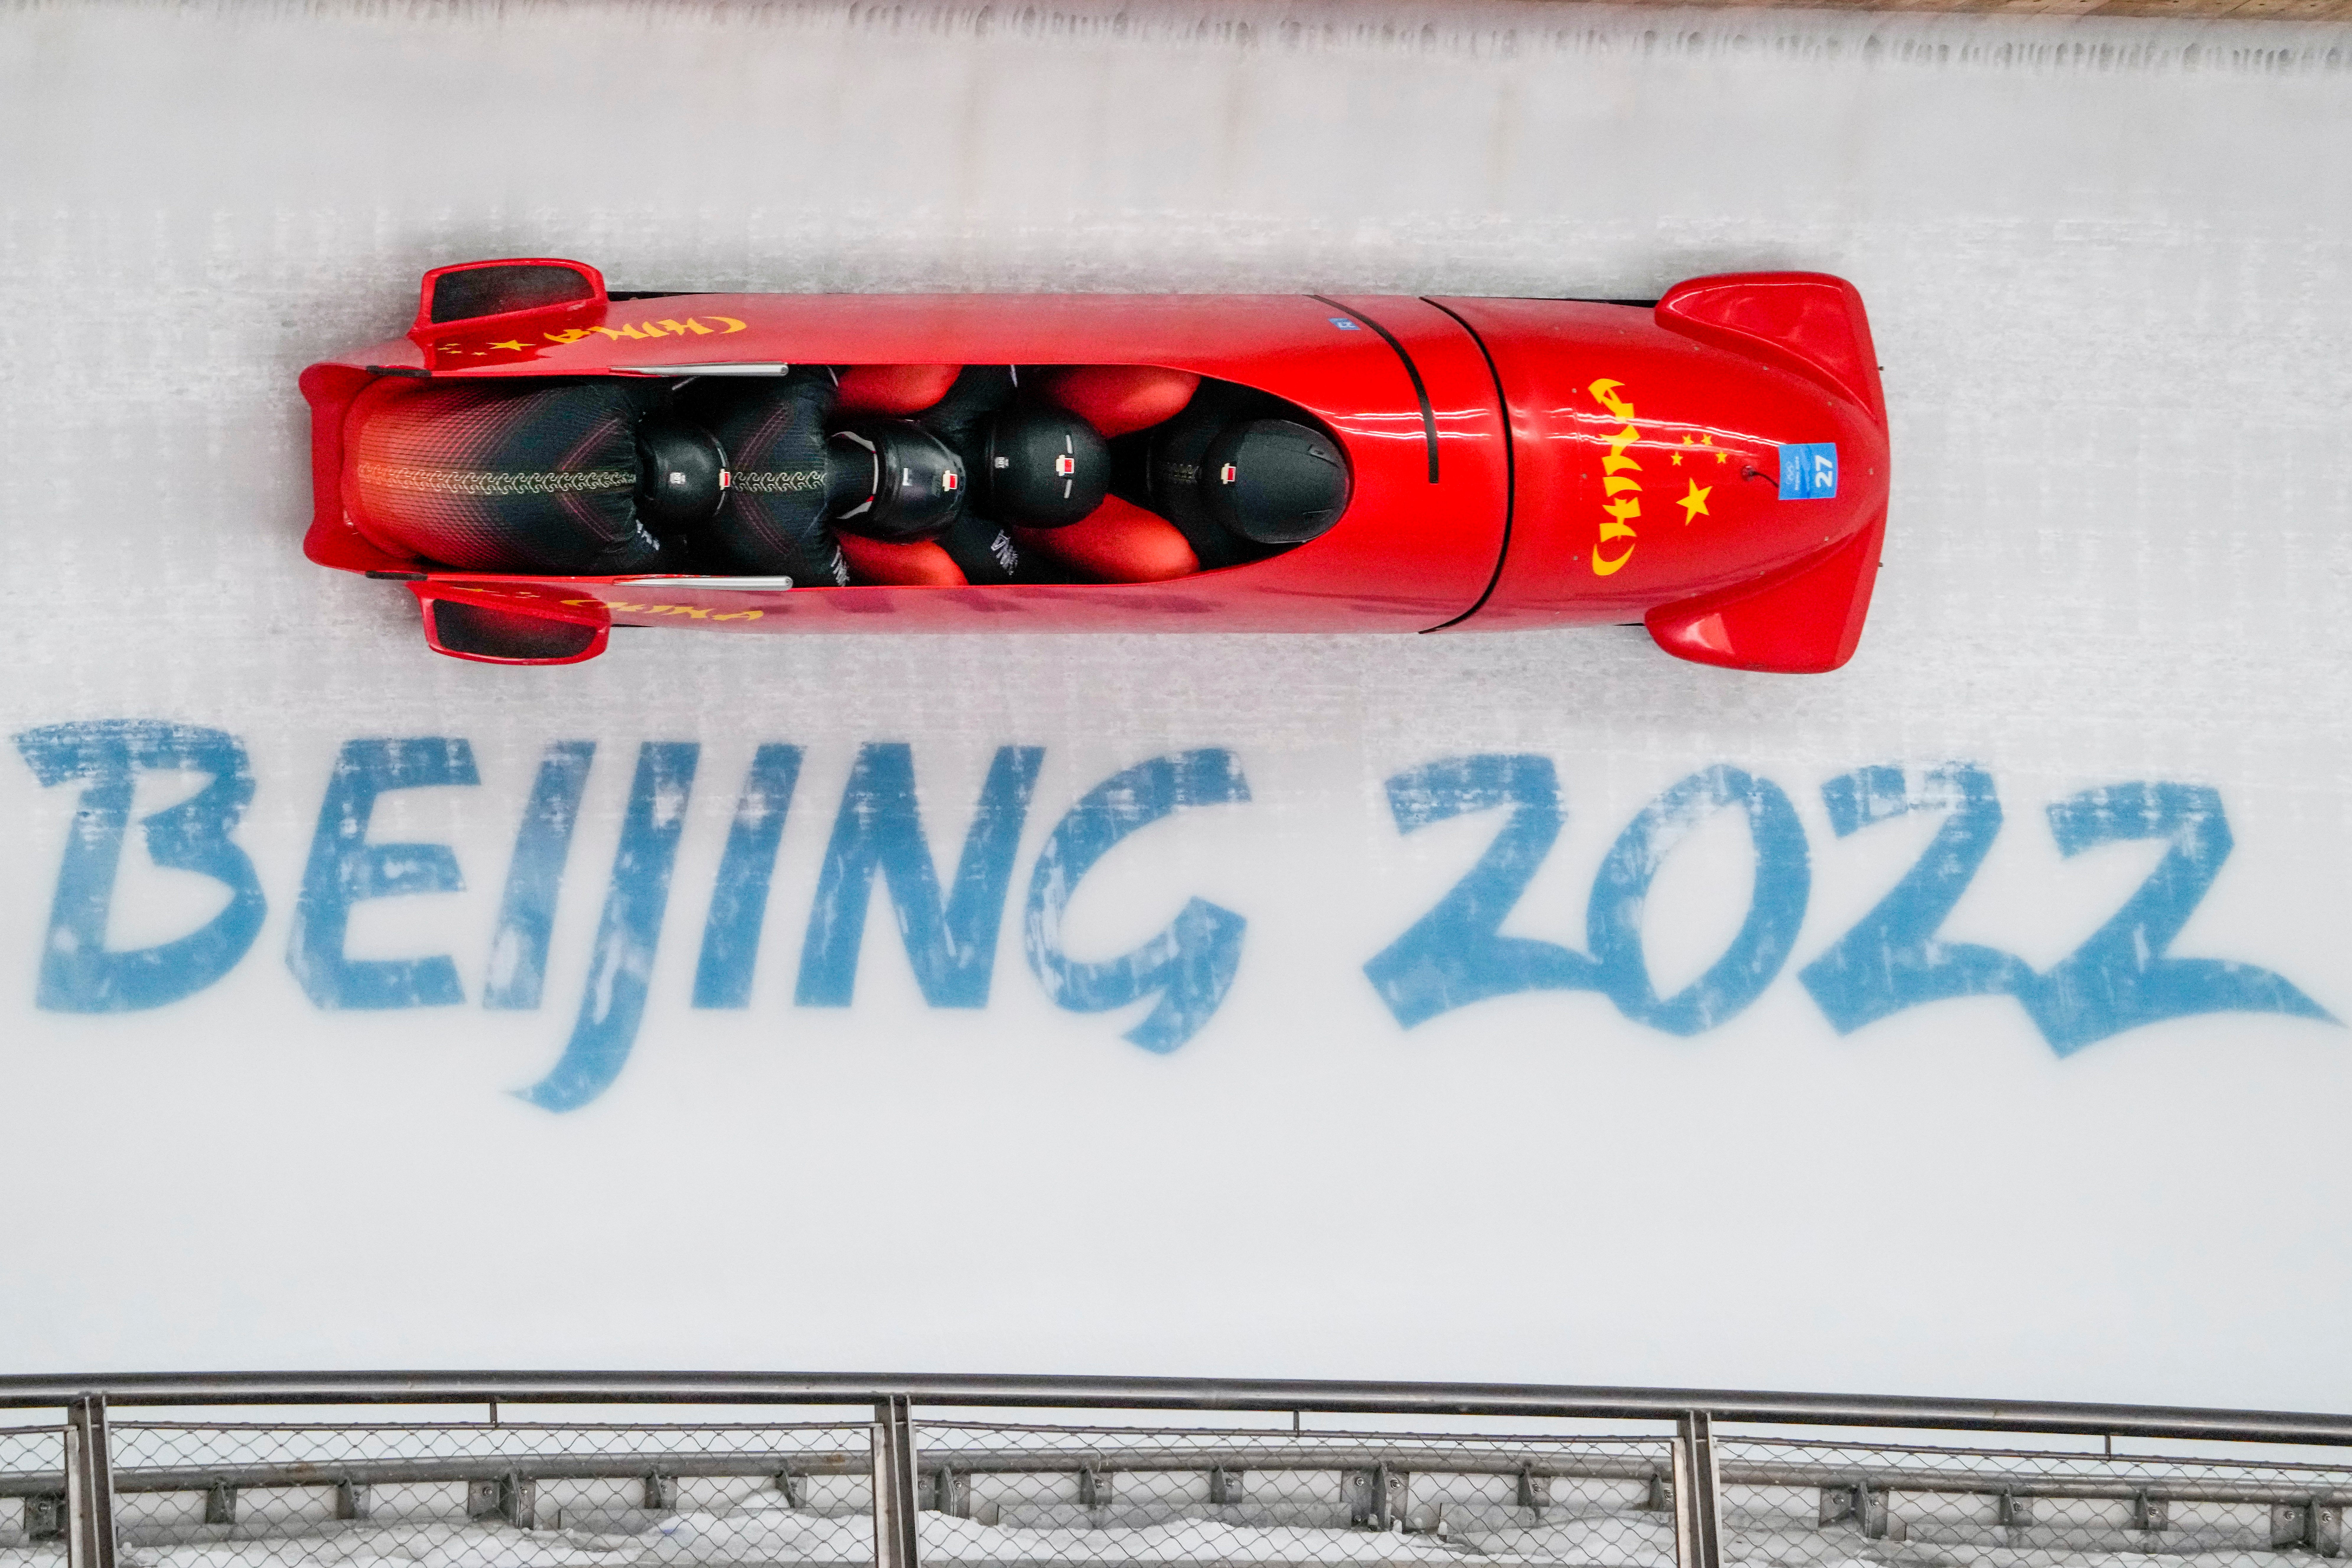 Beijing Olympics Bobsleigh